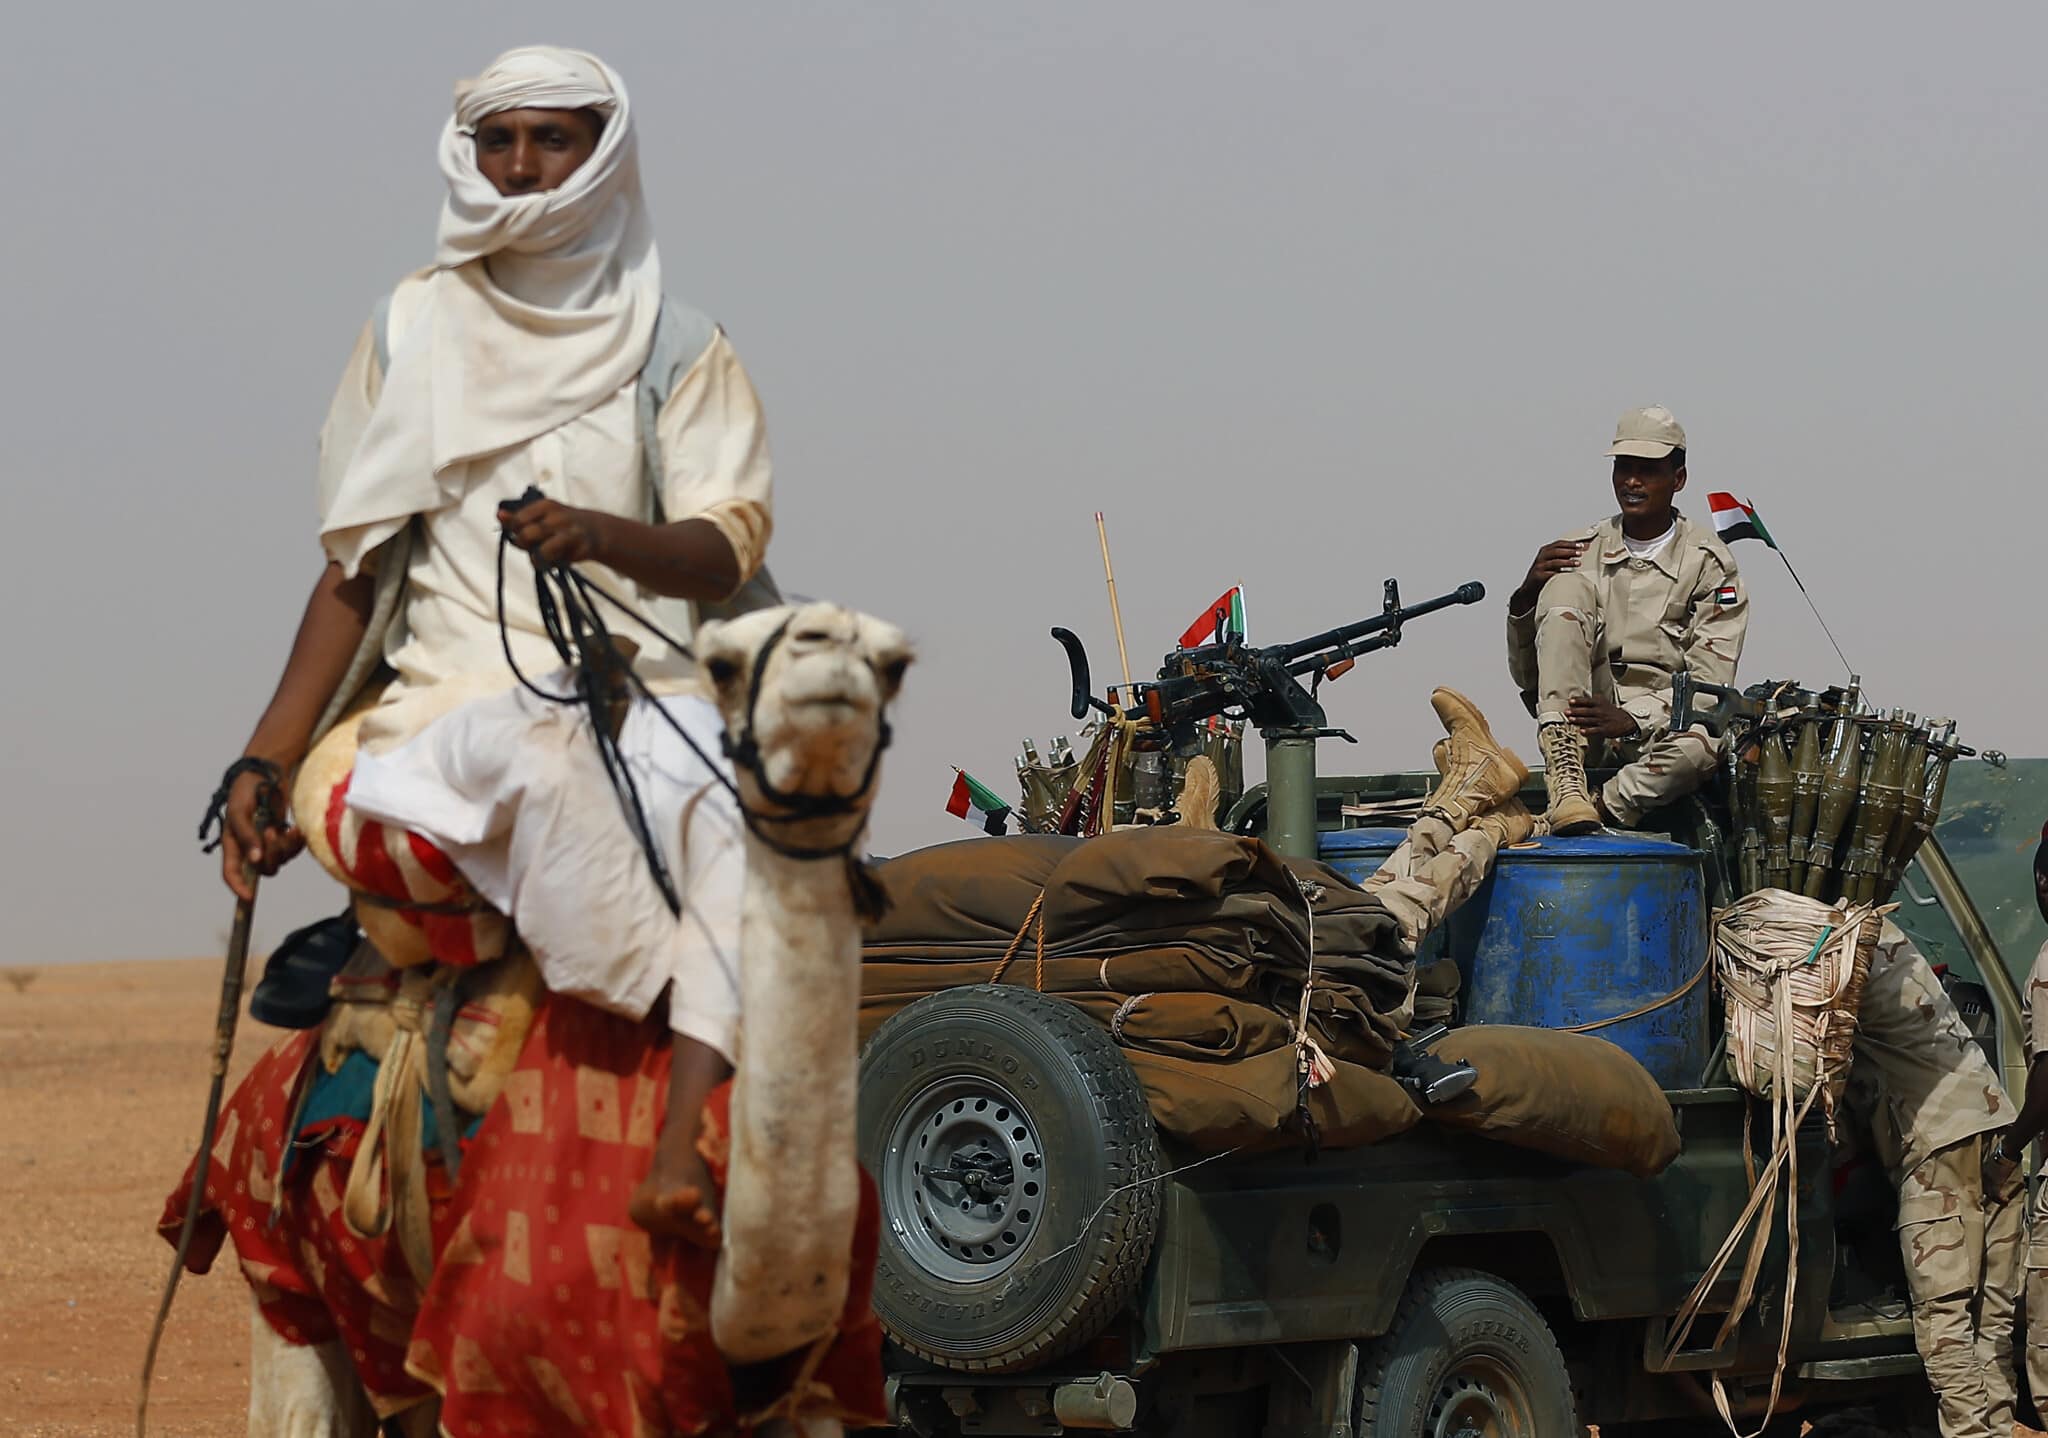 כוח סודאני בהובלת הגנרל מוחמד חמדאן דגלו (על הרכב) בעת הנסיגה מתימן, ב-22 ביוני 2019 (צילום: AP Photo/Hussein Malla)